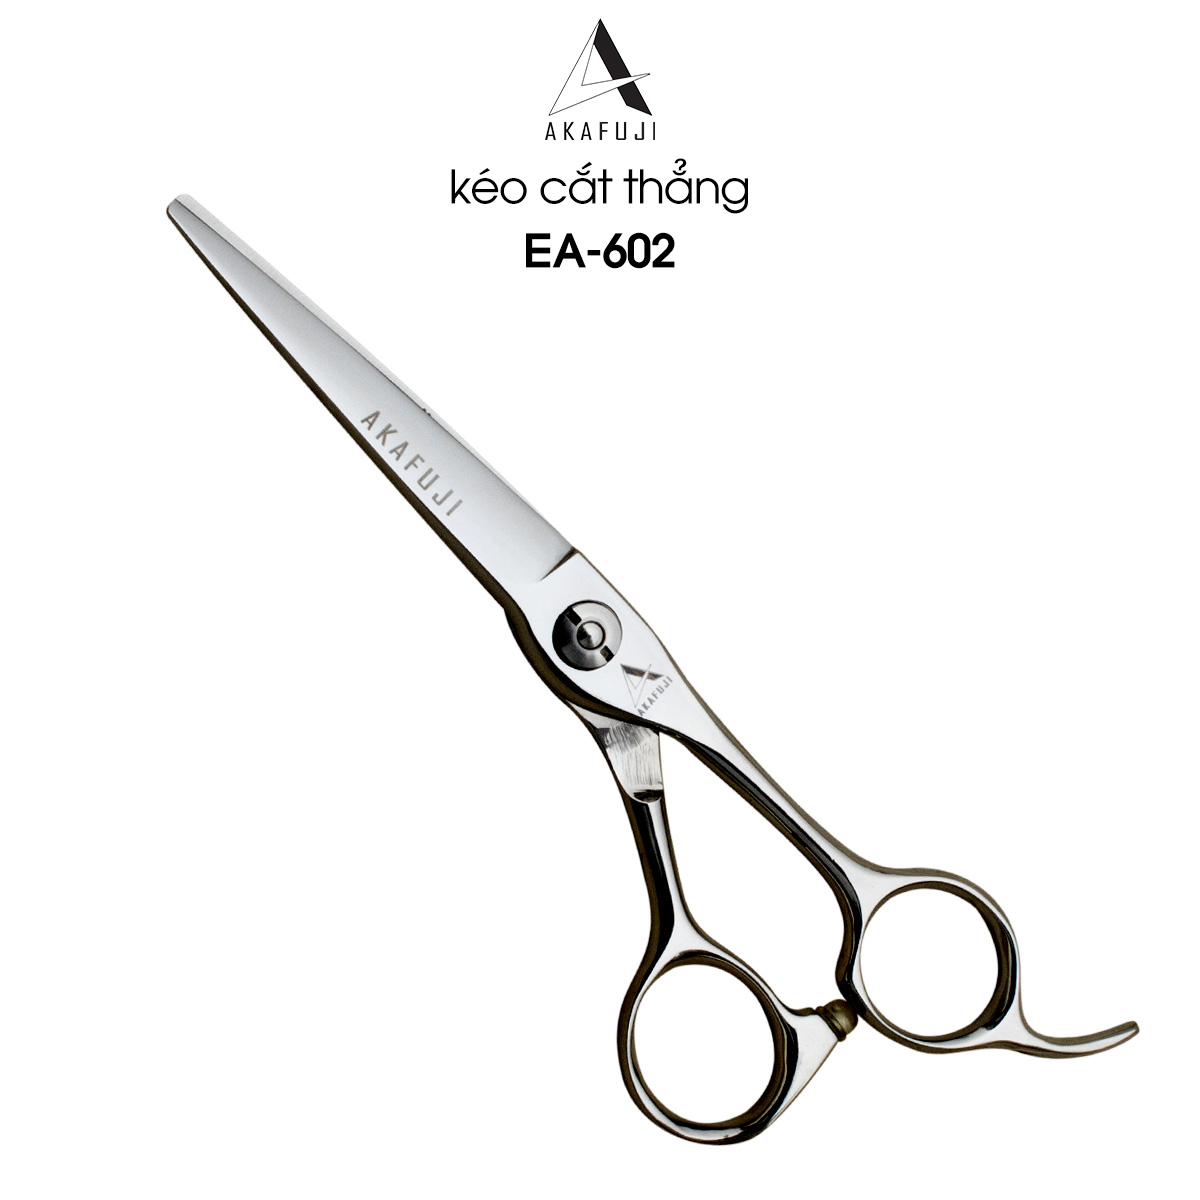 Dụng cụ cắt tóc nam giá rẻ chất lượng mẫu mã đa dạng bảo hành chính hãng  tại TPHCM